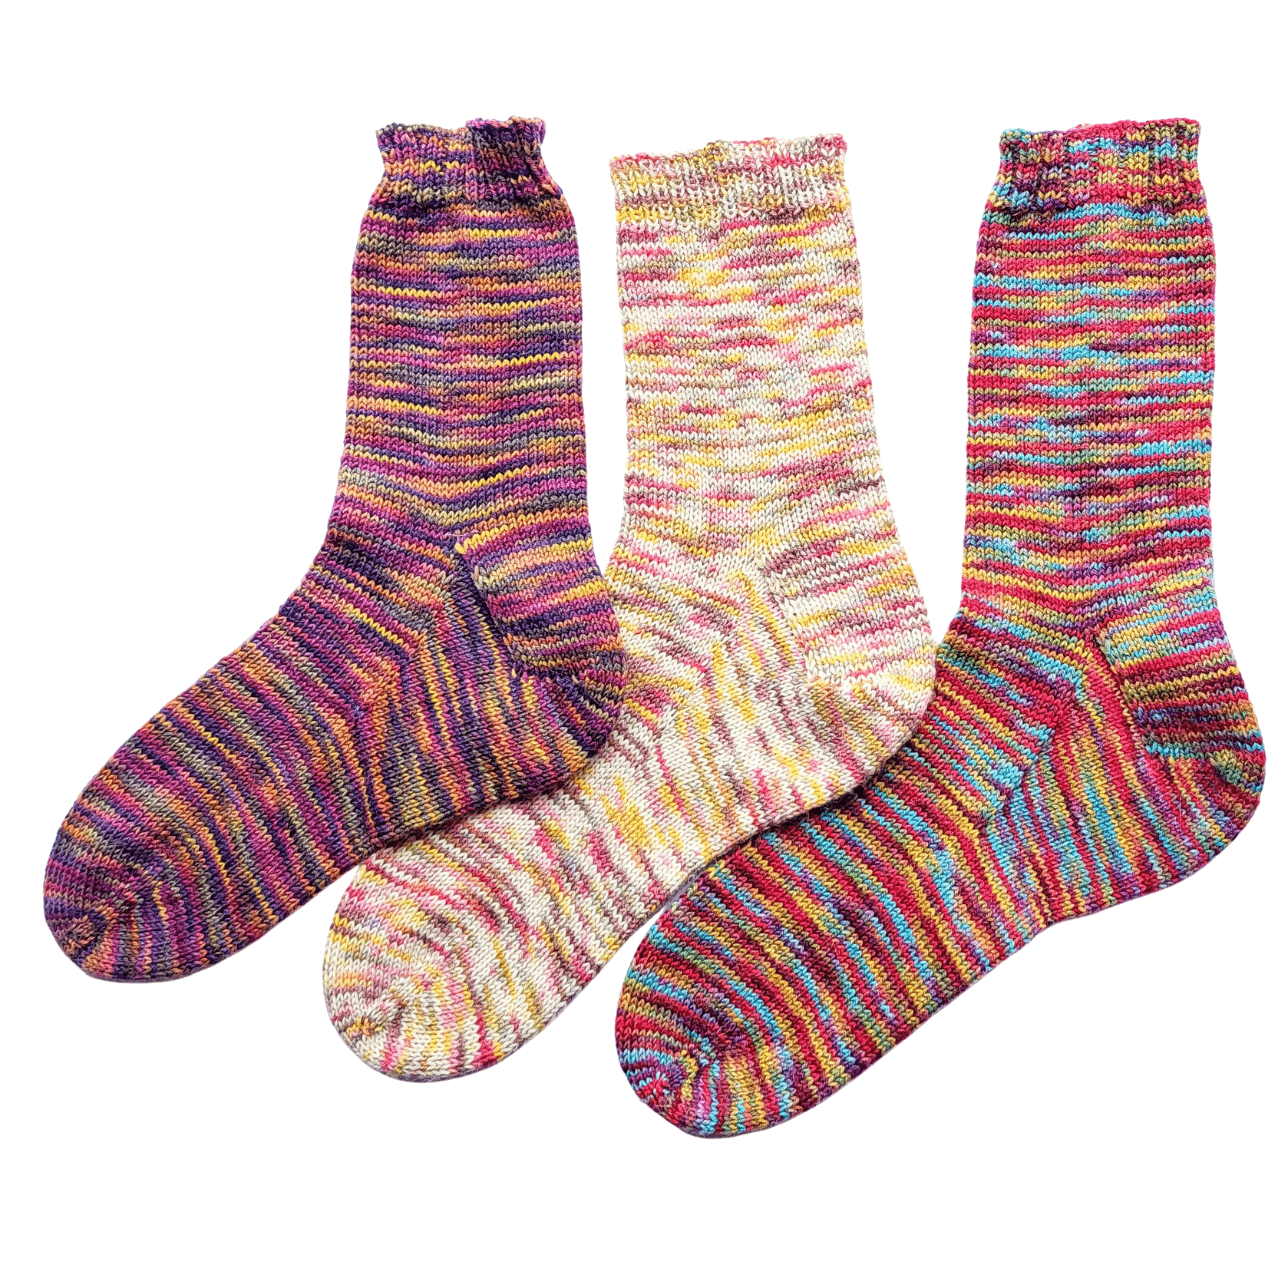 Sitting Knitting Kit - Beginnner's toe up socks